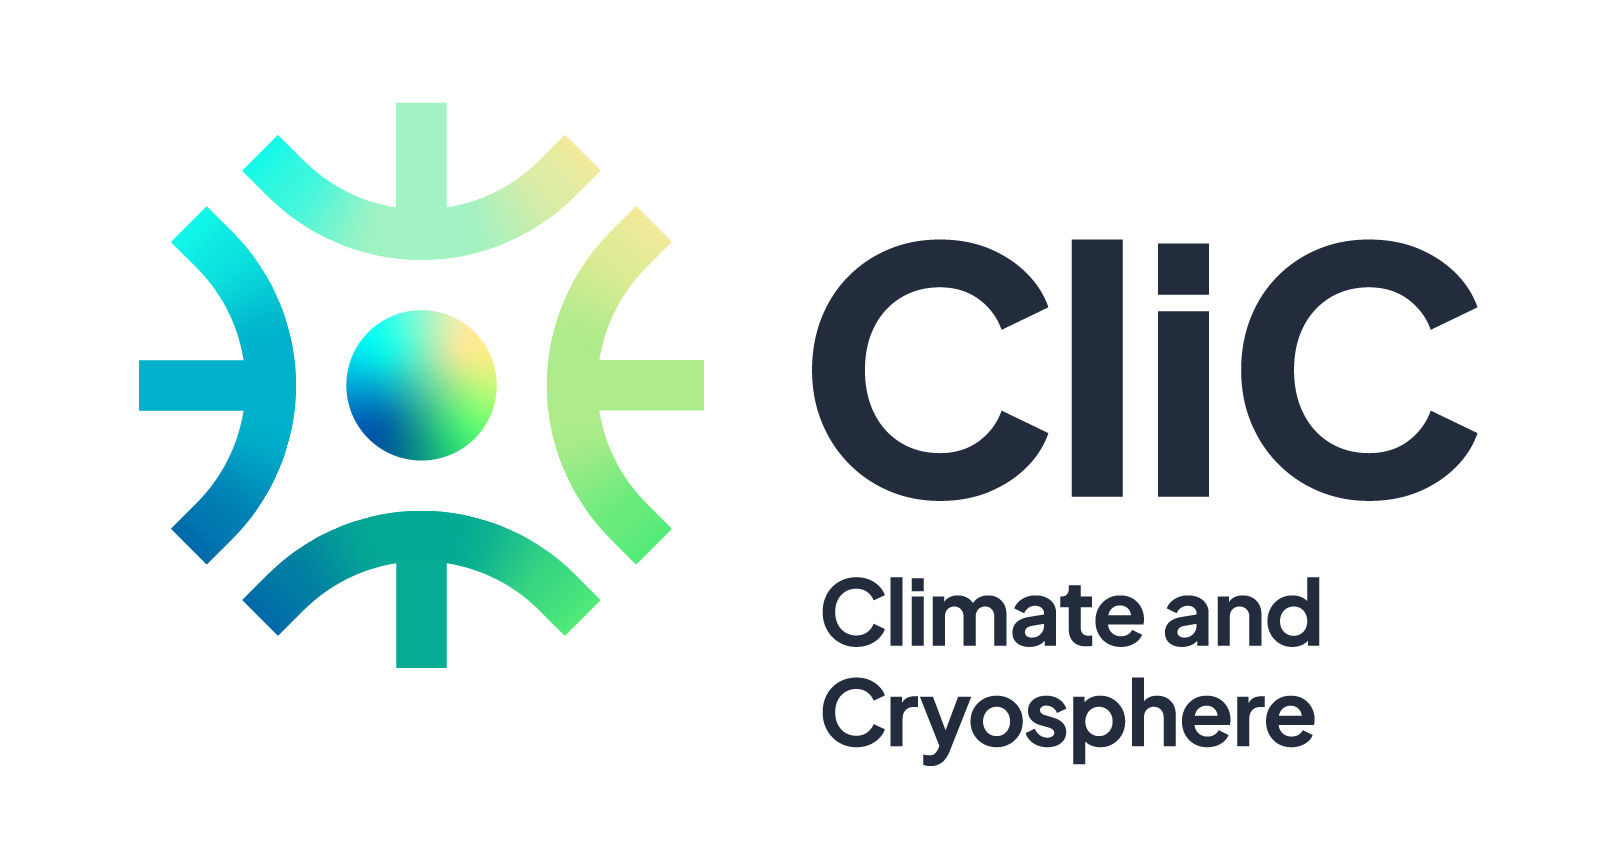 CliC logo